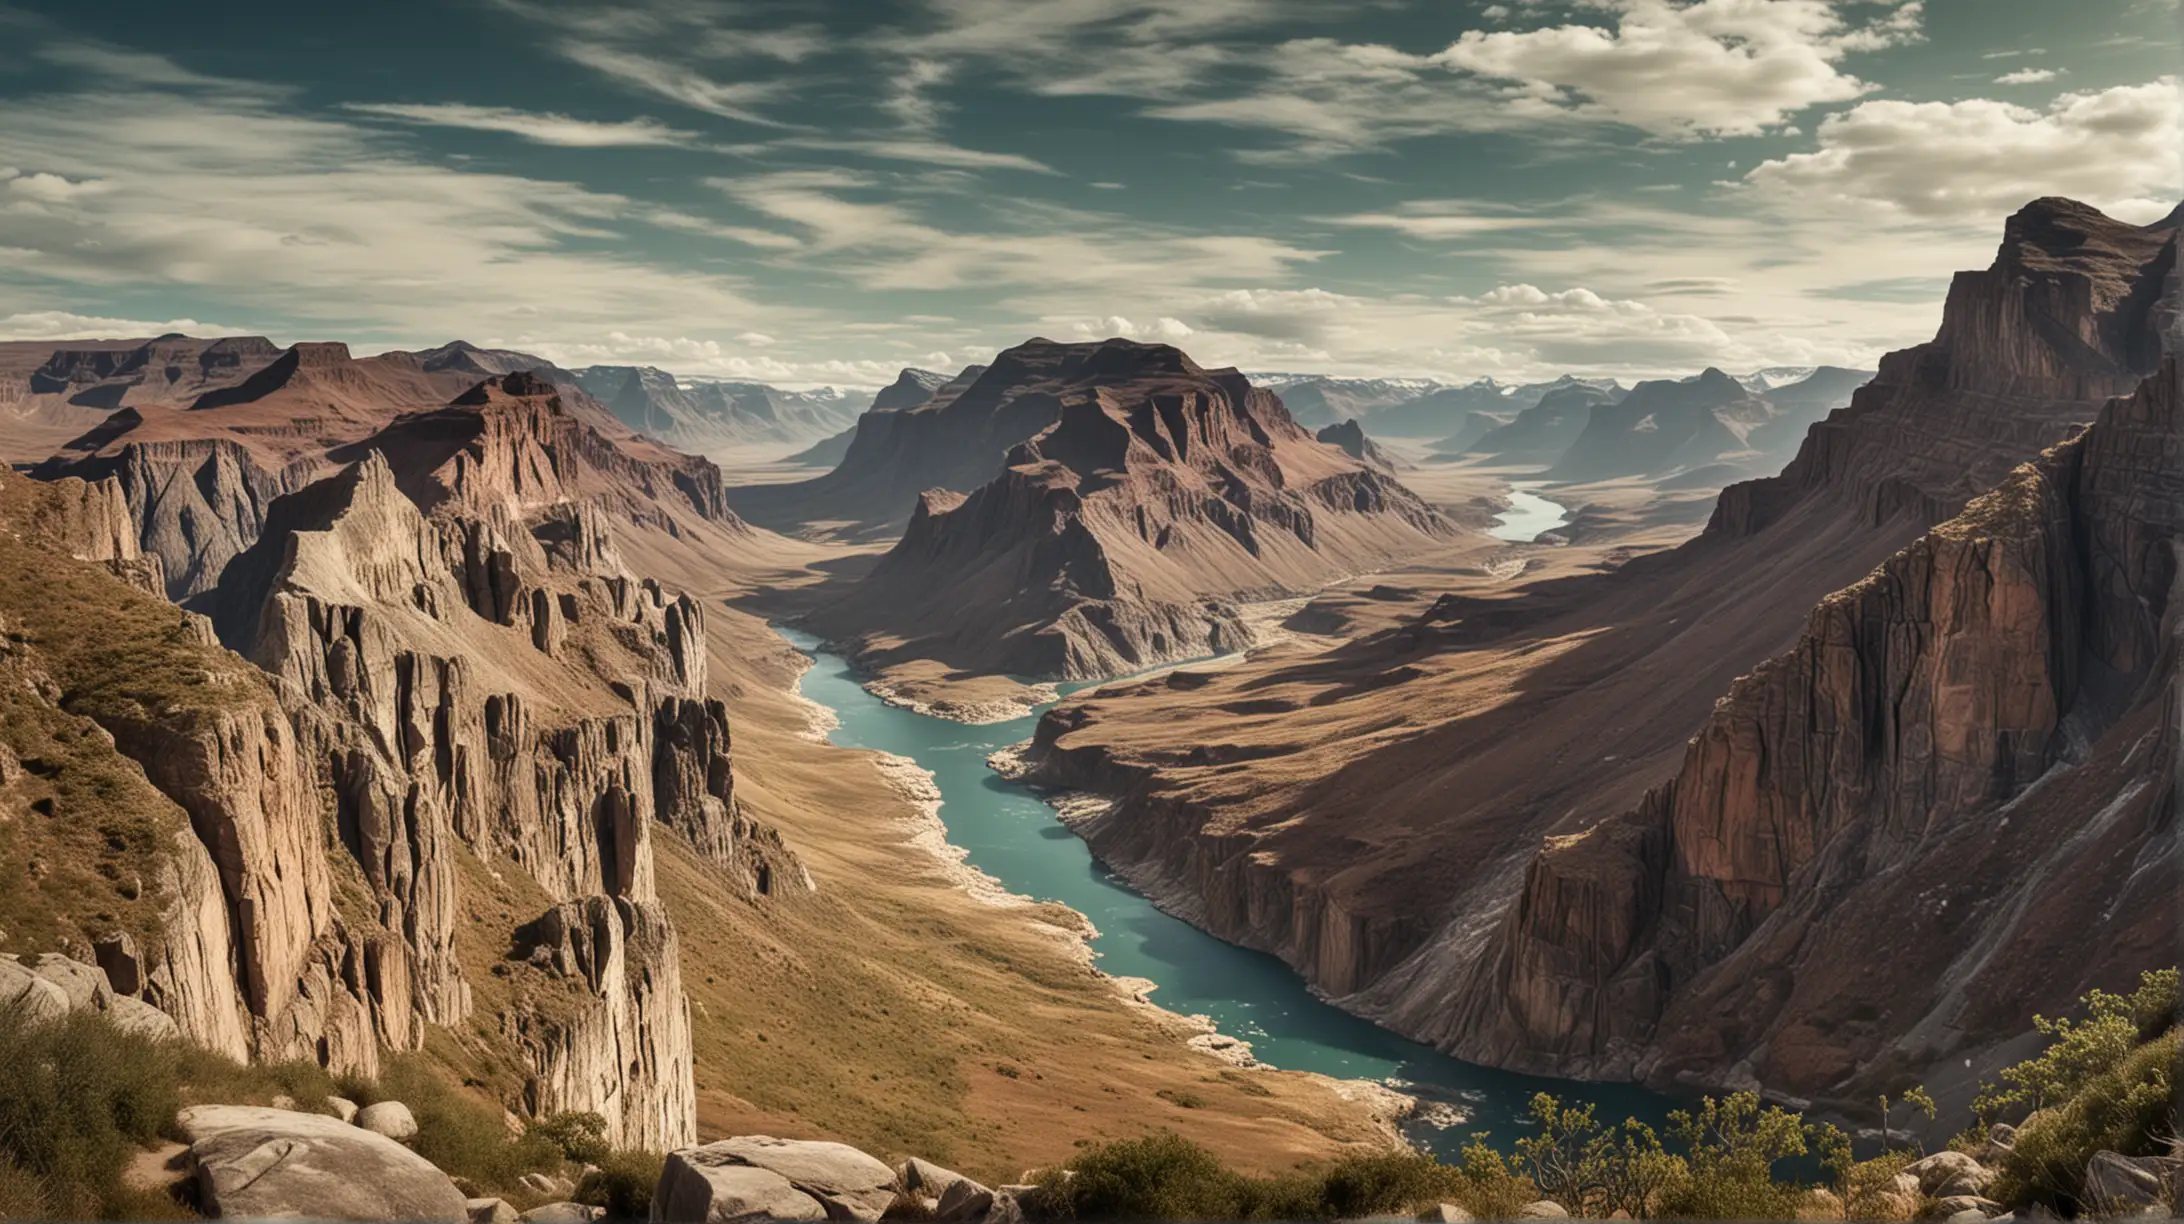 Une vue panoramique d’un paysage partant du Groenland à gauche allant au grand canyon à droite en passant la jungle au milieu.
Style photographie 